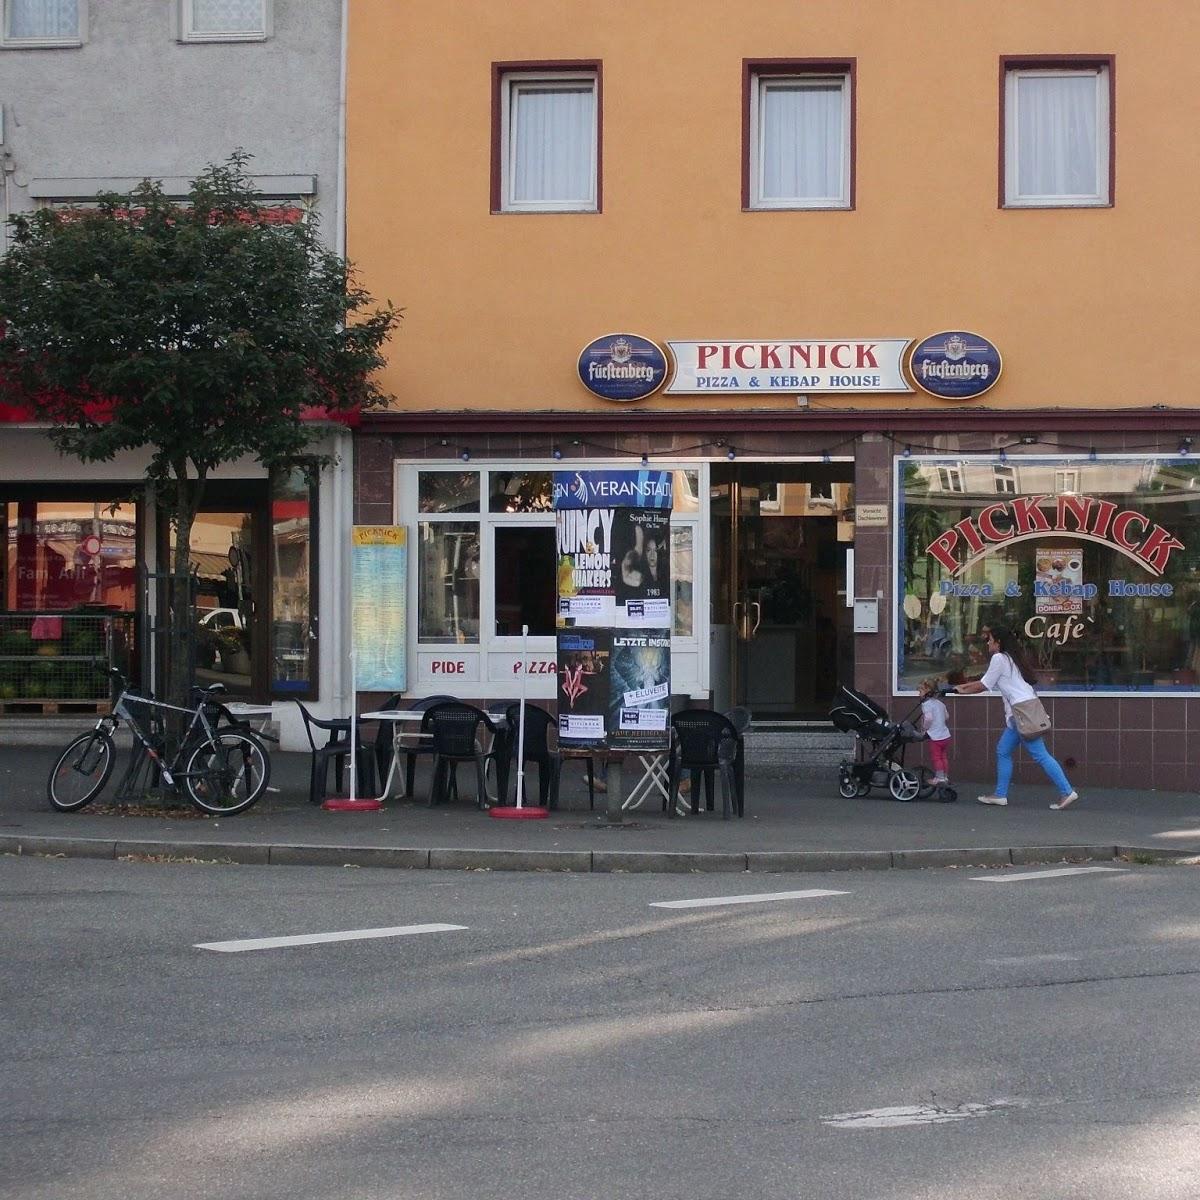 Restaurant "Picknick Pizza Kebap House" in Tuttlingen